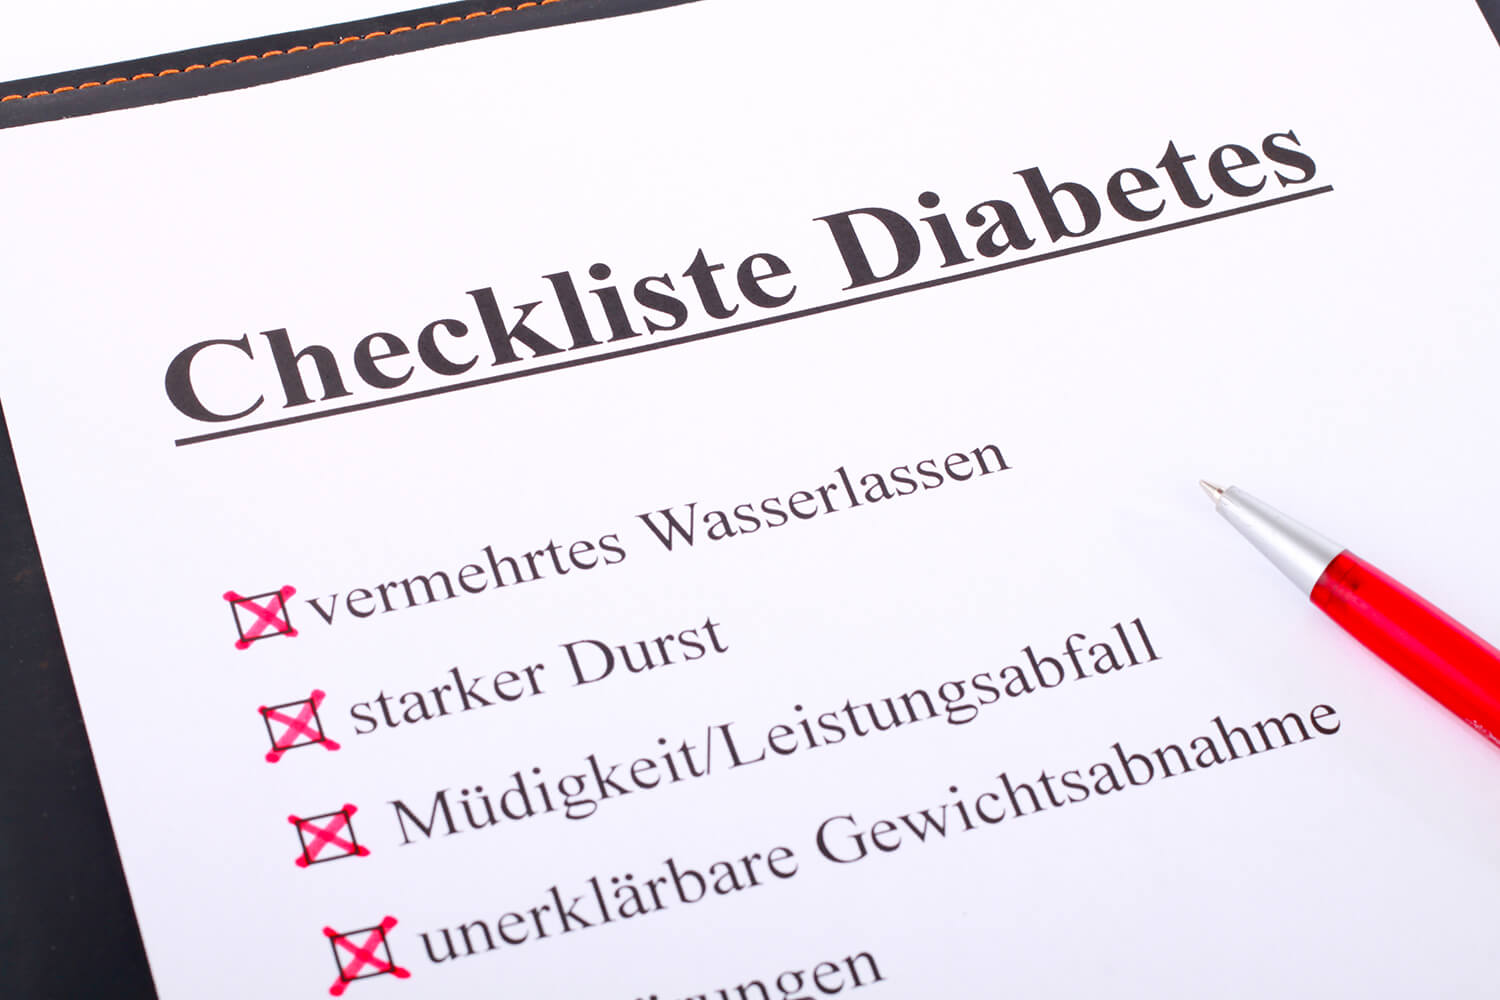 Checkliste Diabetes mit angekreuzten Symptomen 